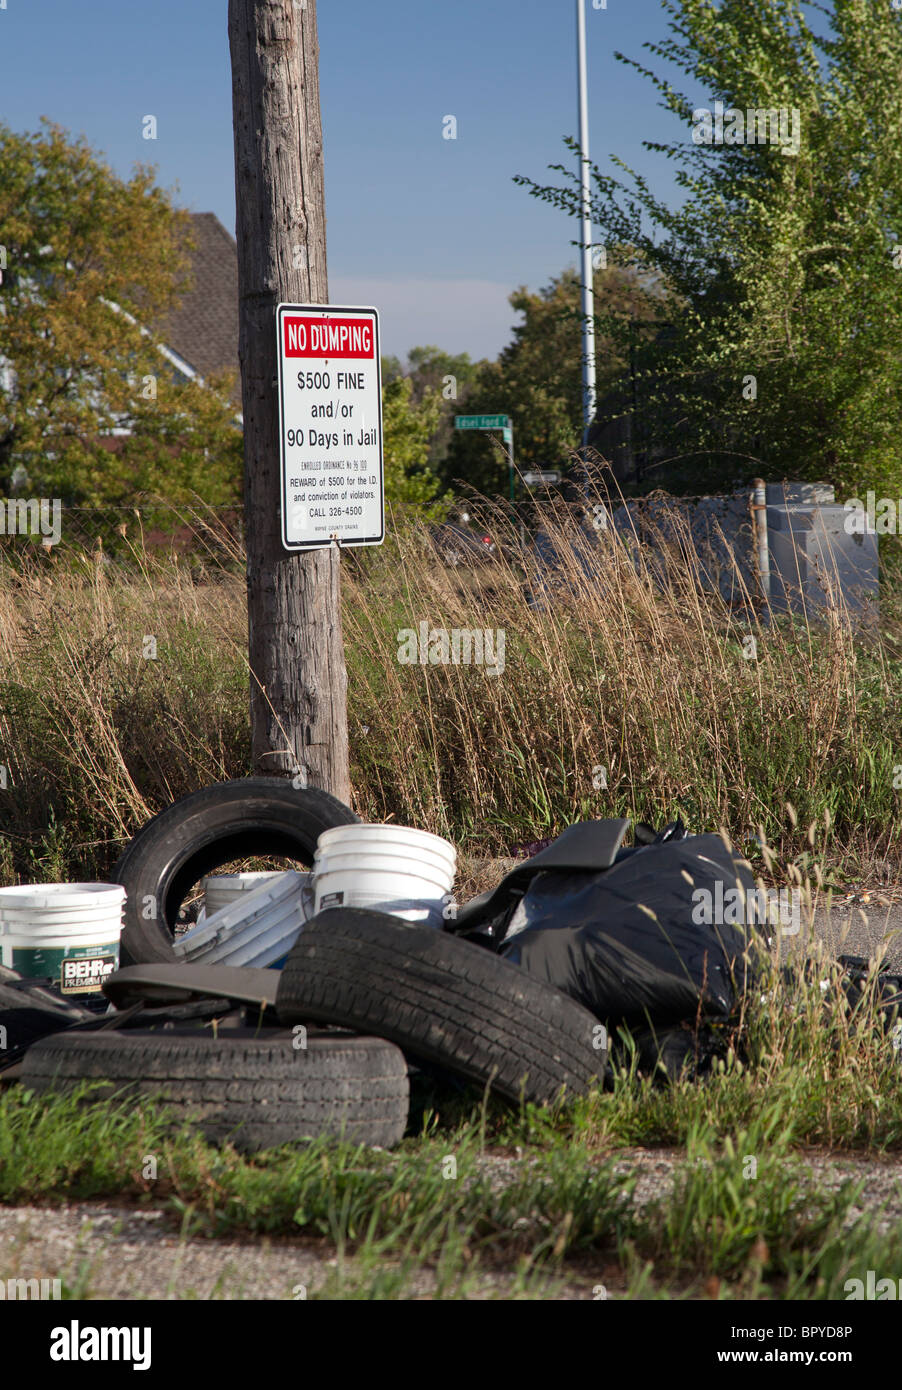 Detroit, Michigan - alte Reifen und anderen Müll wird in einer Gasse neben ein Schild Warnung vor Strafen für illegale Ablagerung abgekippt. Stockfoto